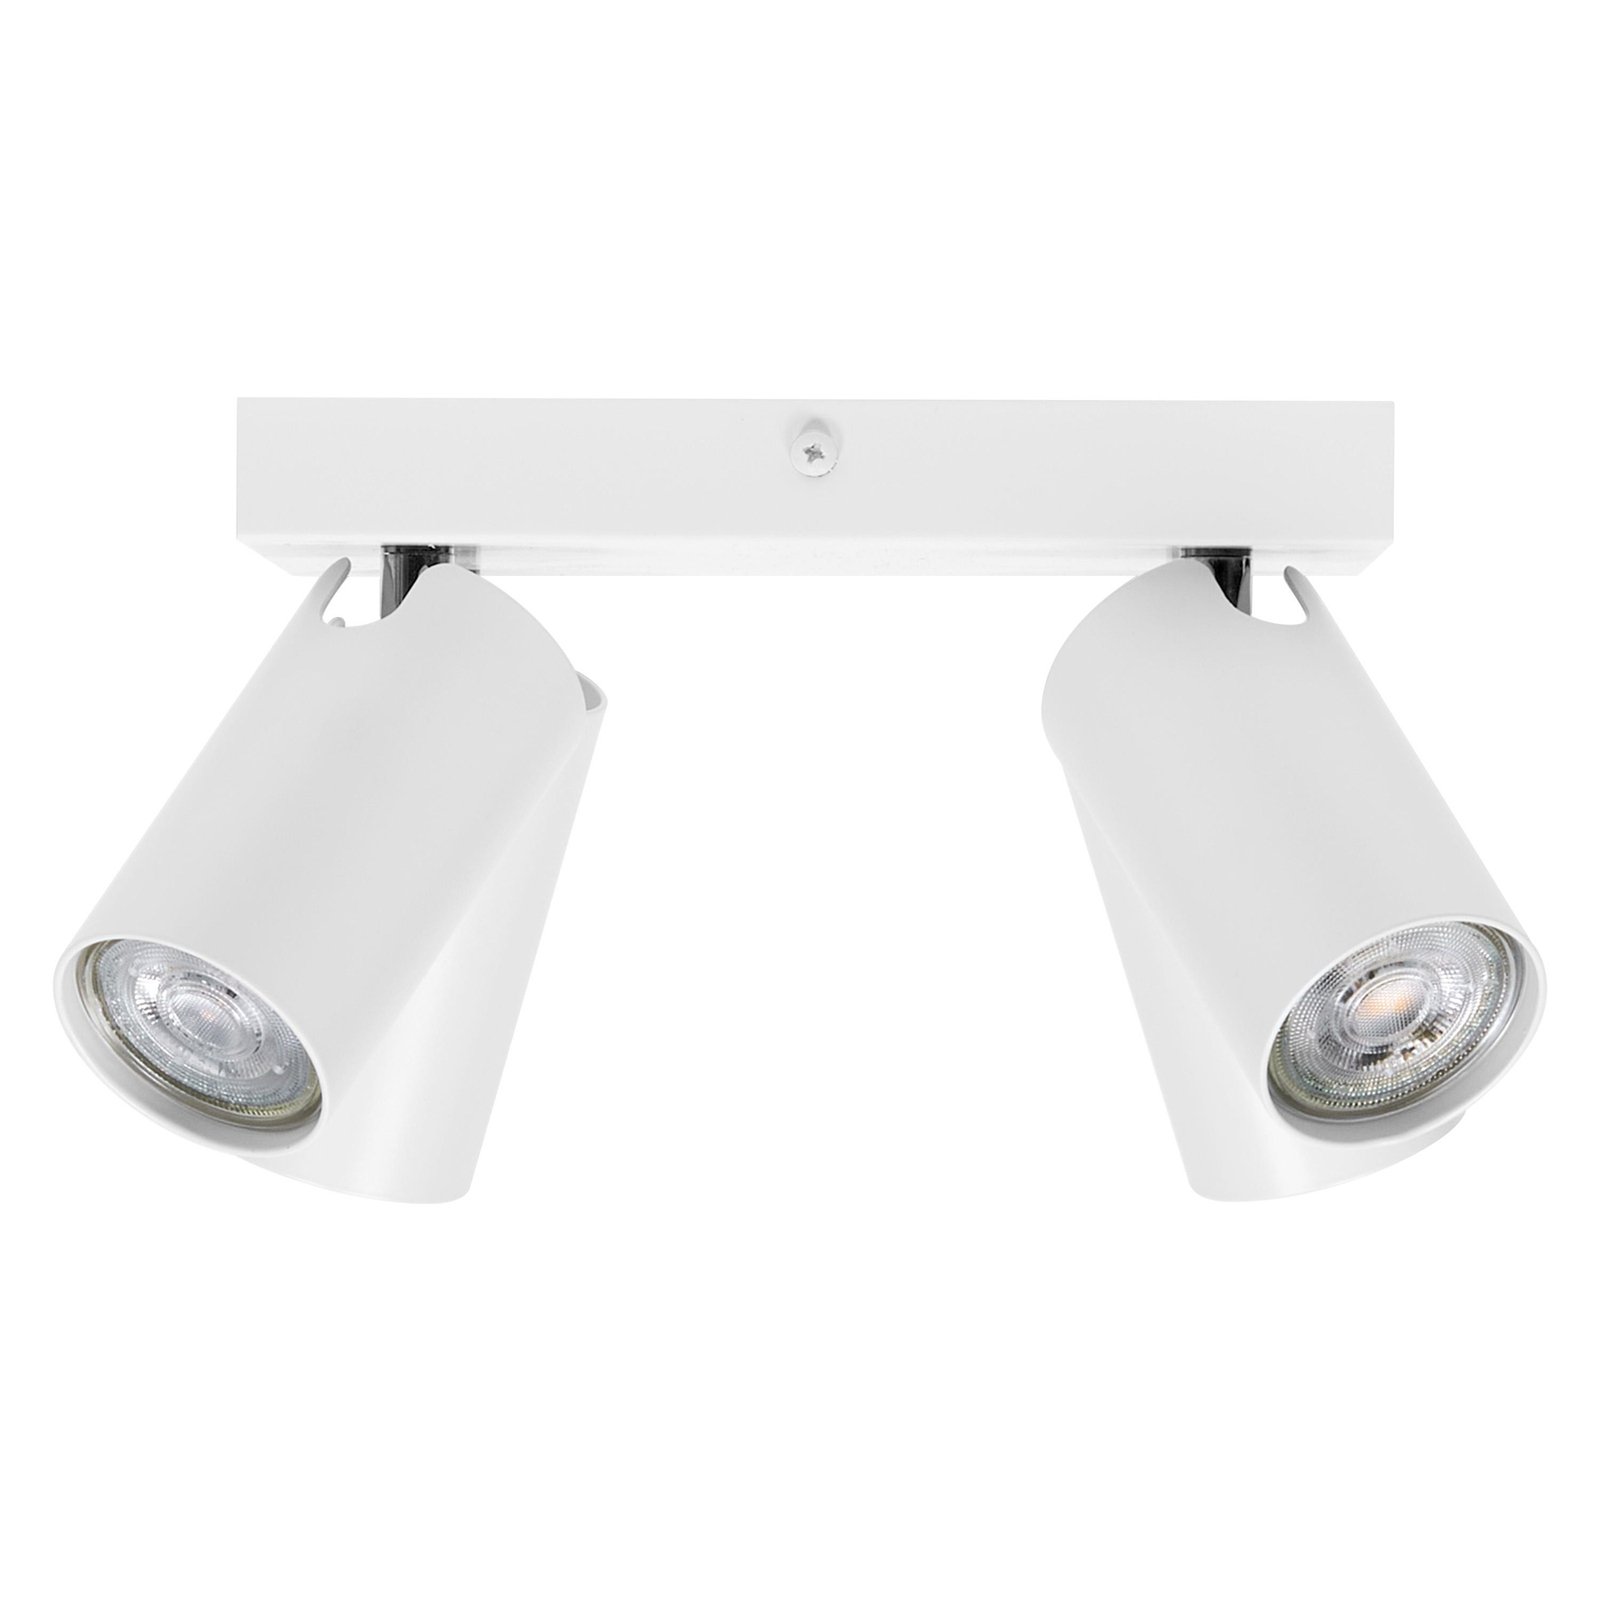 LEDVANCE LED reflektor Octagon, dimabilan, 4 žarulje, četvrtasti, bijeli